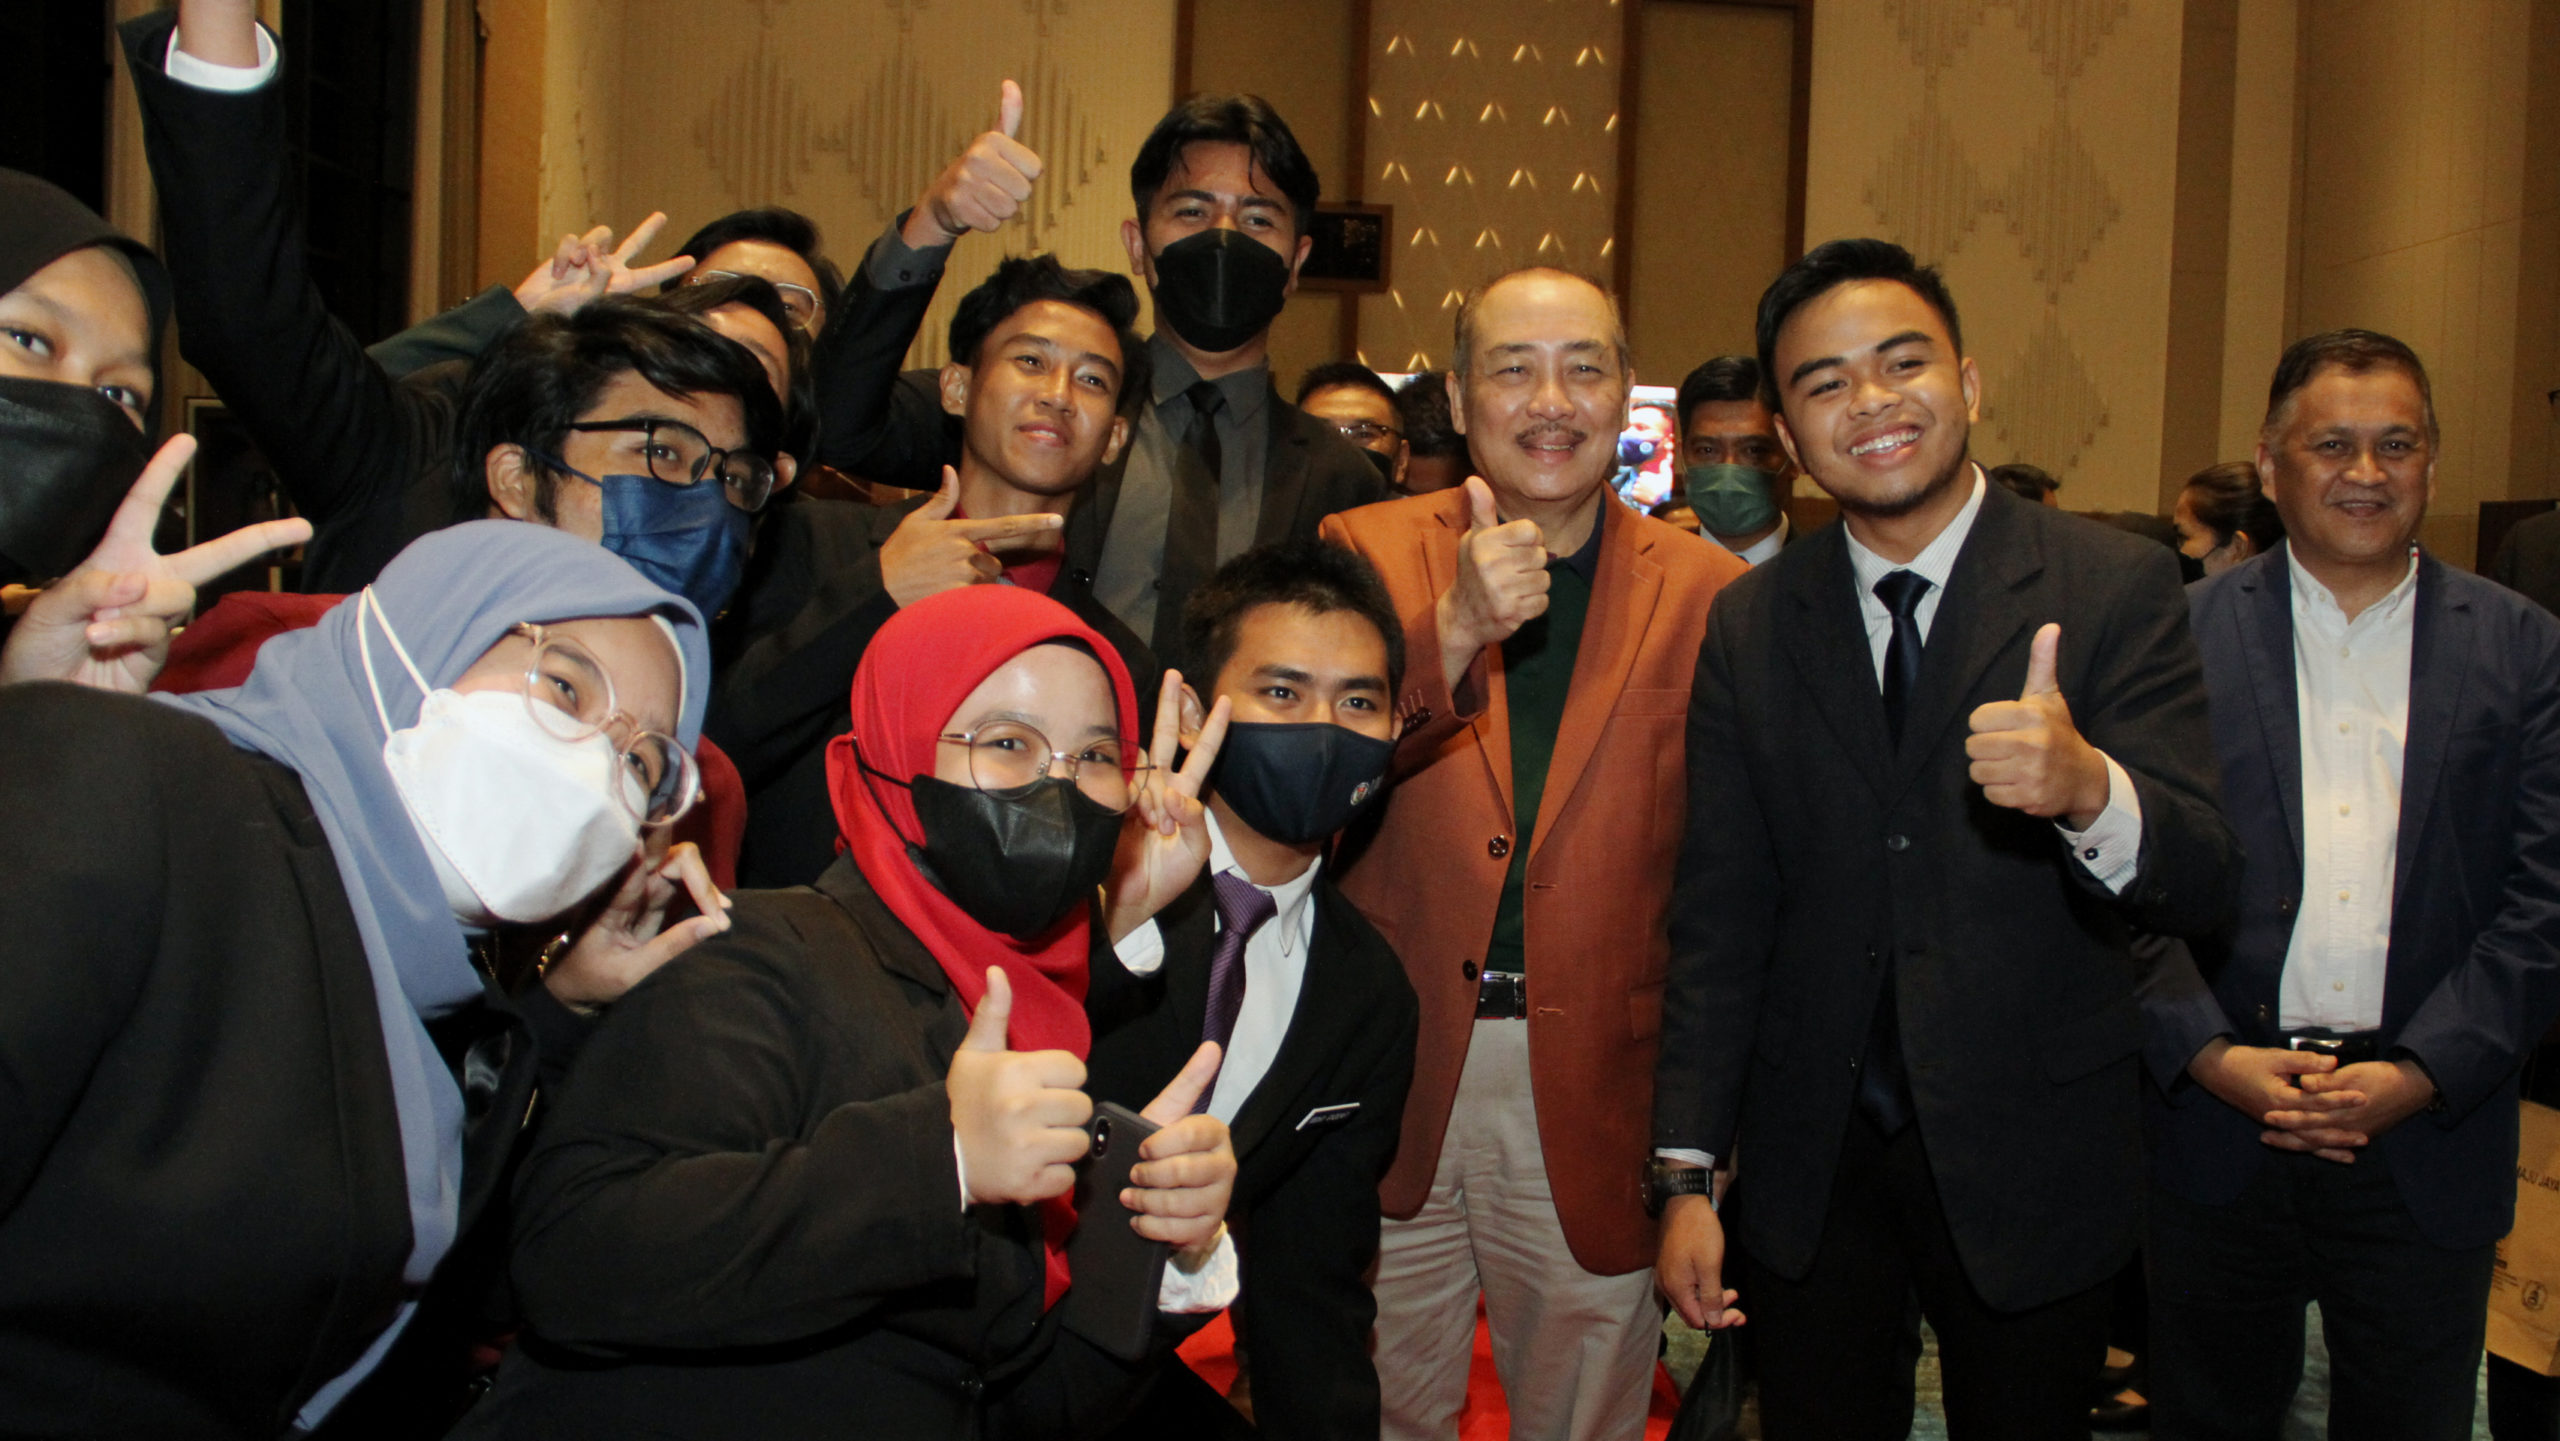 Ketua Menteri, Datuk Seri Hajiji Noor bersama sebahagian peserta selepas merasmikan Majlis Perundingan Pelajar Sabah (MPPS) di Sabah International Convention Centre (SICC) di sini, malam tadi.